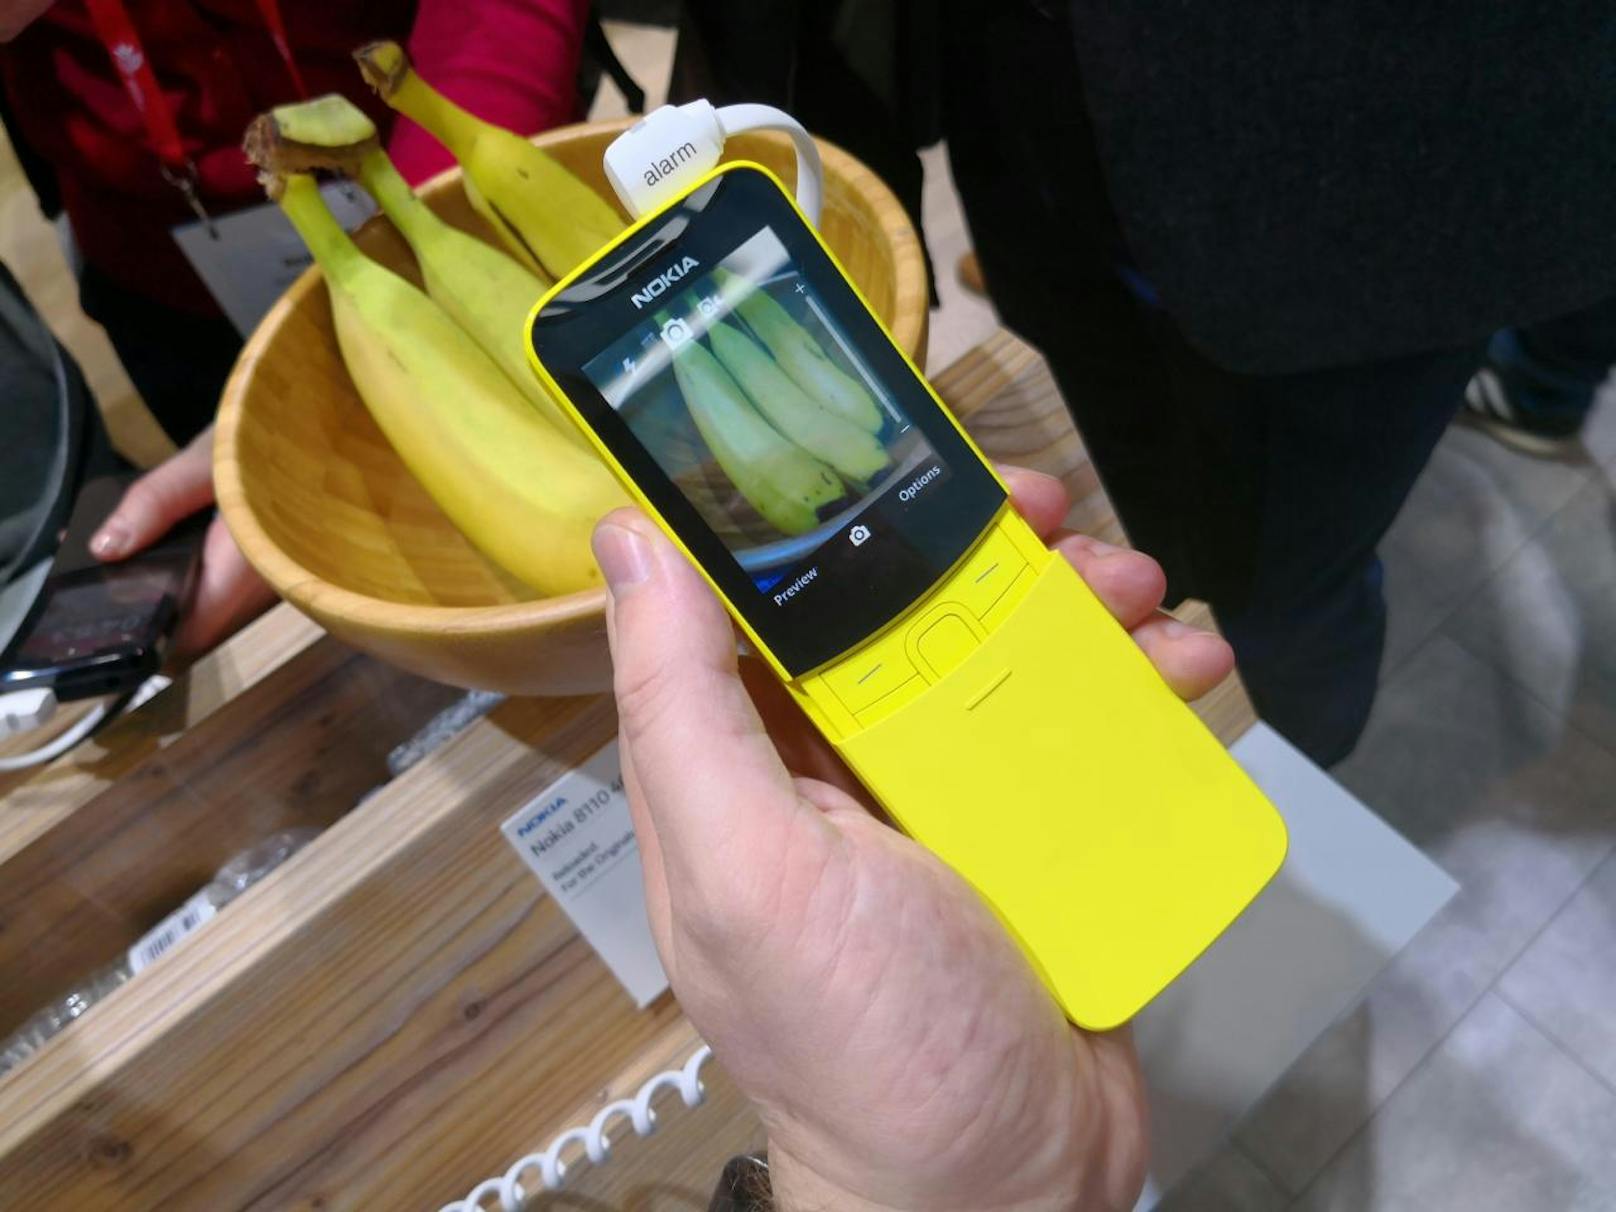 Angetrieben wird das Nokia 8110 4G durch die Qualcomm 205 Mobile Platform, der Bildschirm liefert Farbe, Snake gibt es in einer neuen Version und es ist eine Kamera vorhanden.